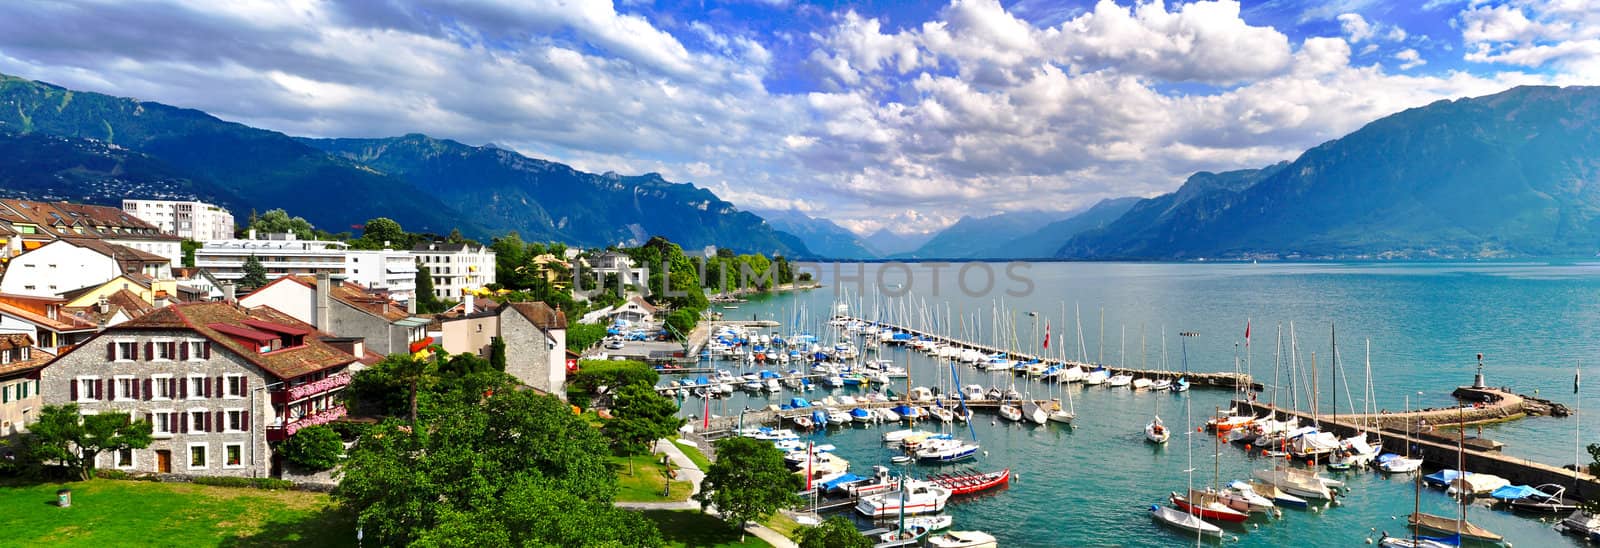 Swiss lake panorama by catalinr